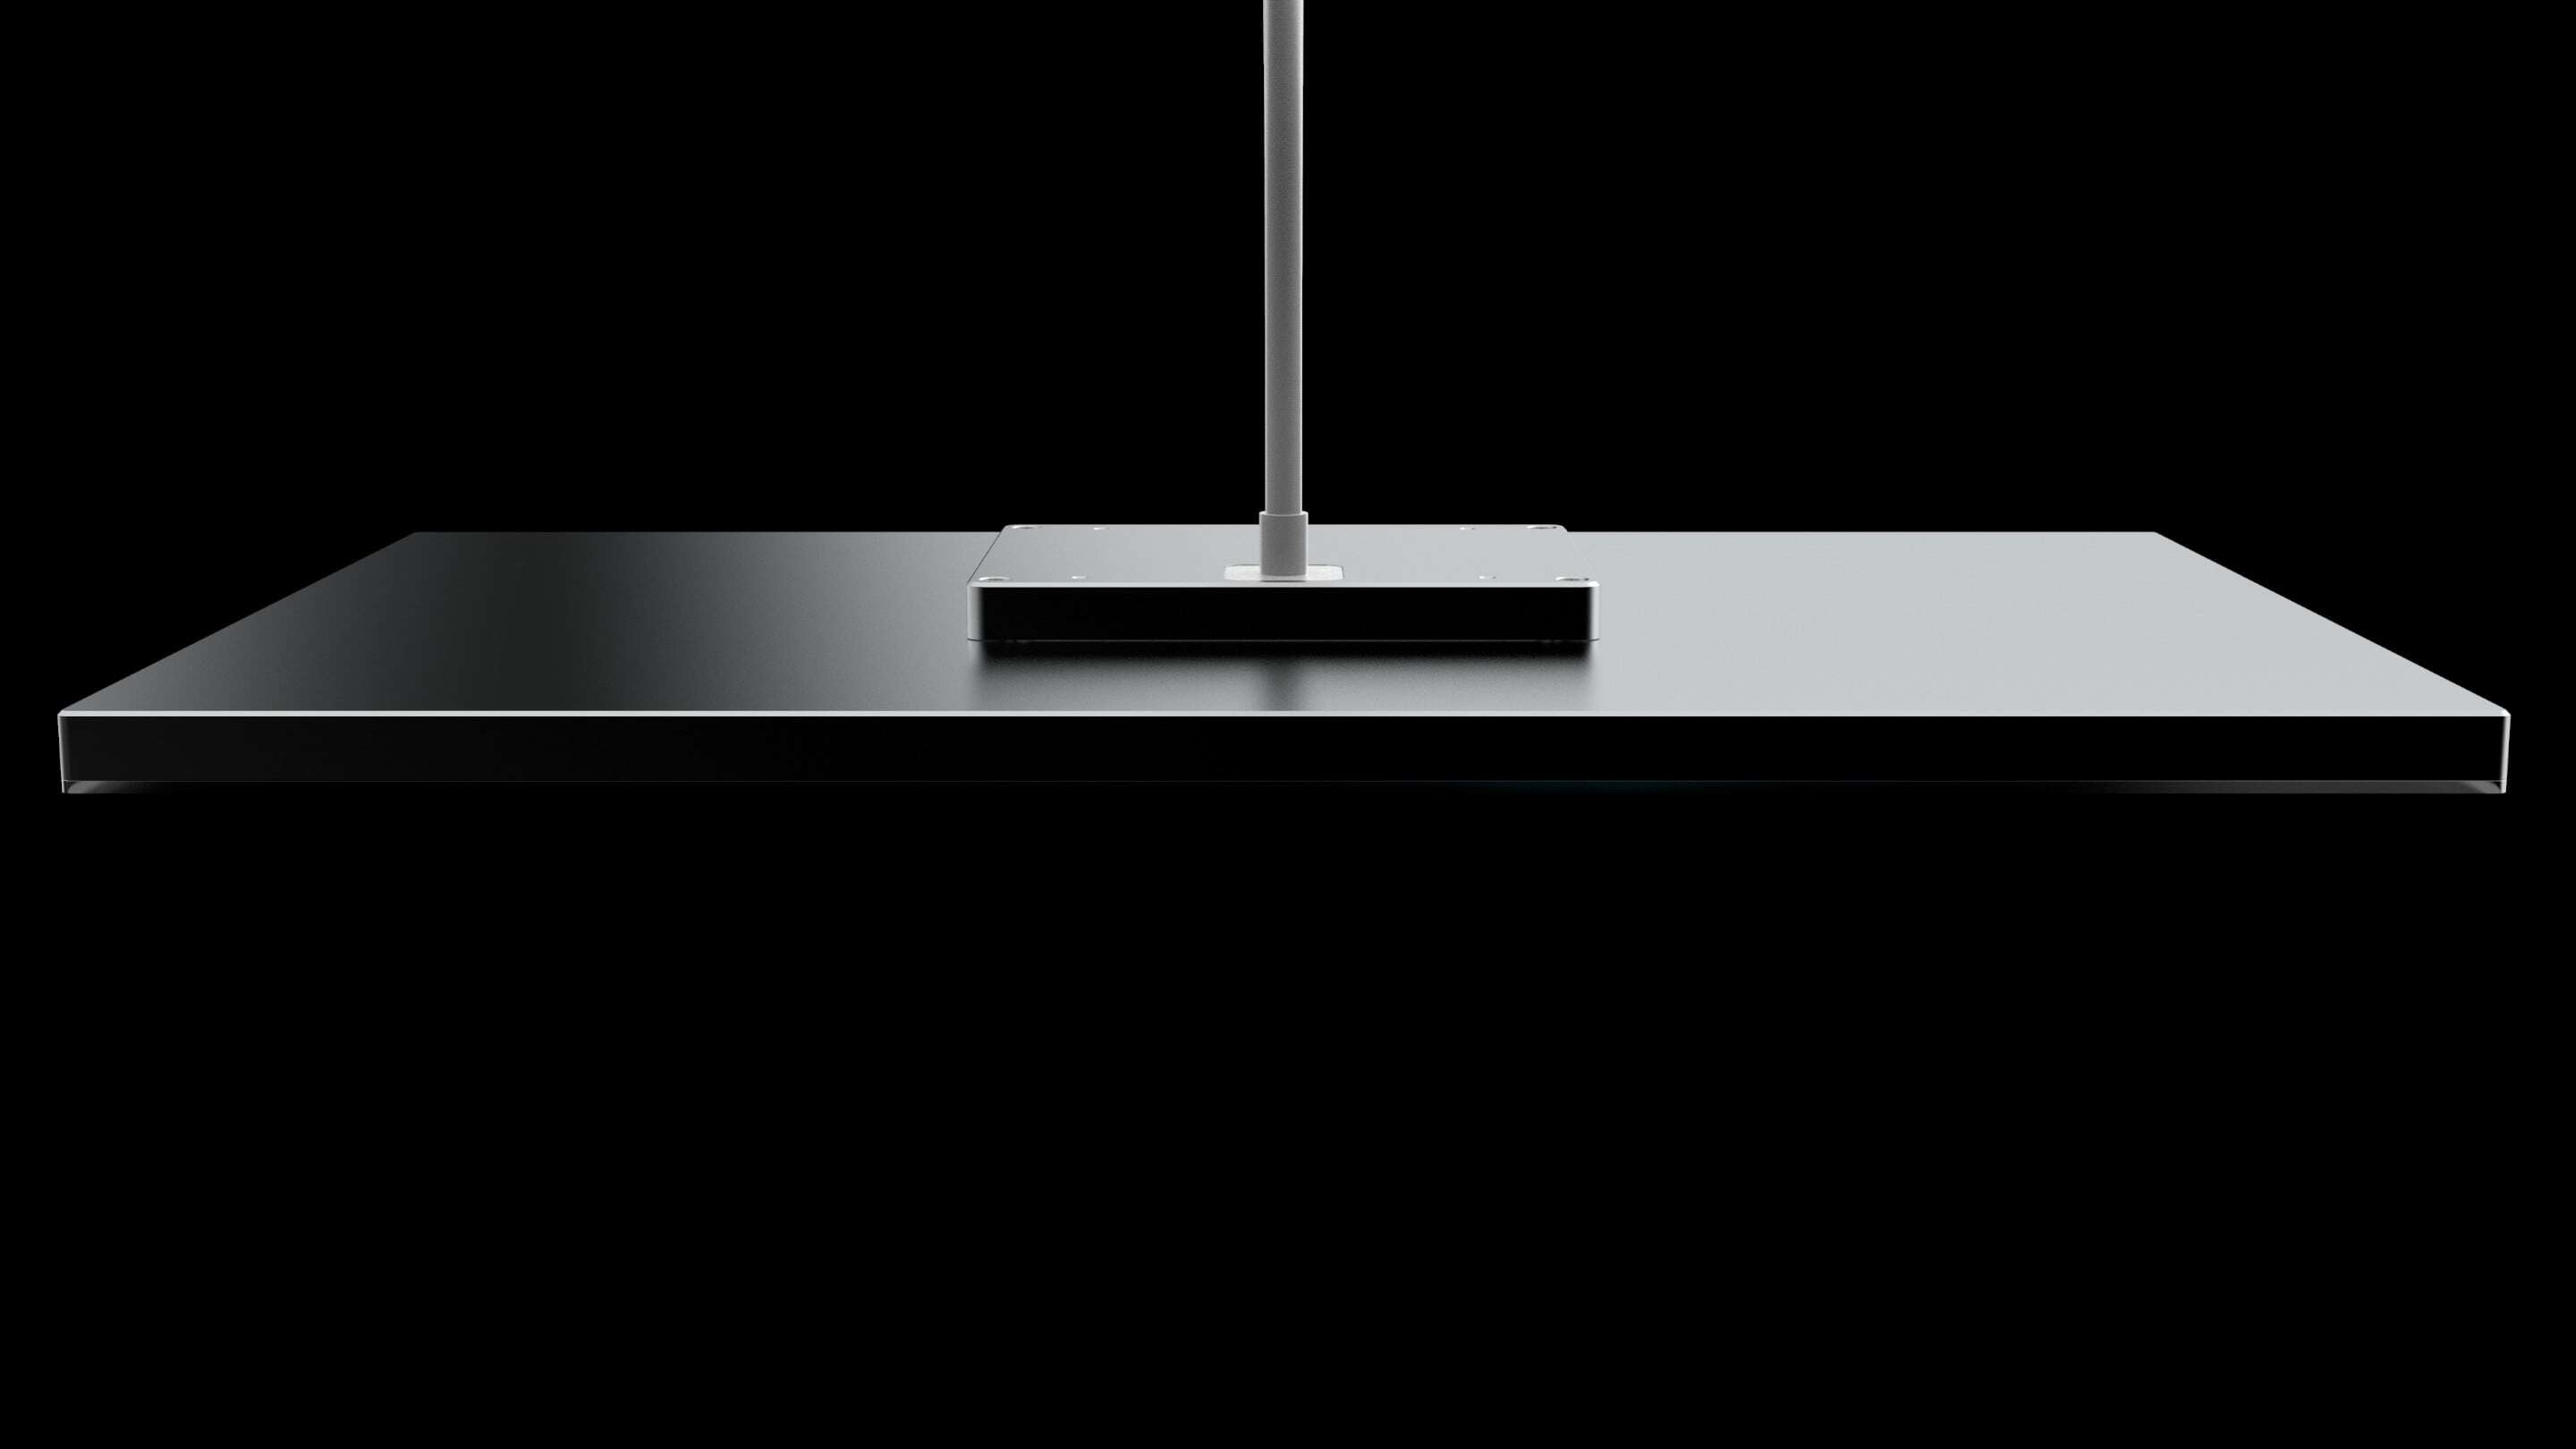 طراحی - طراحی یک کابل یک میز مستطیلی سیاه و سفید با یک قطب